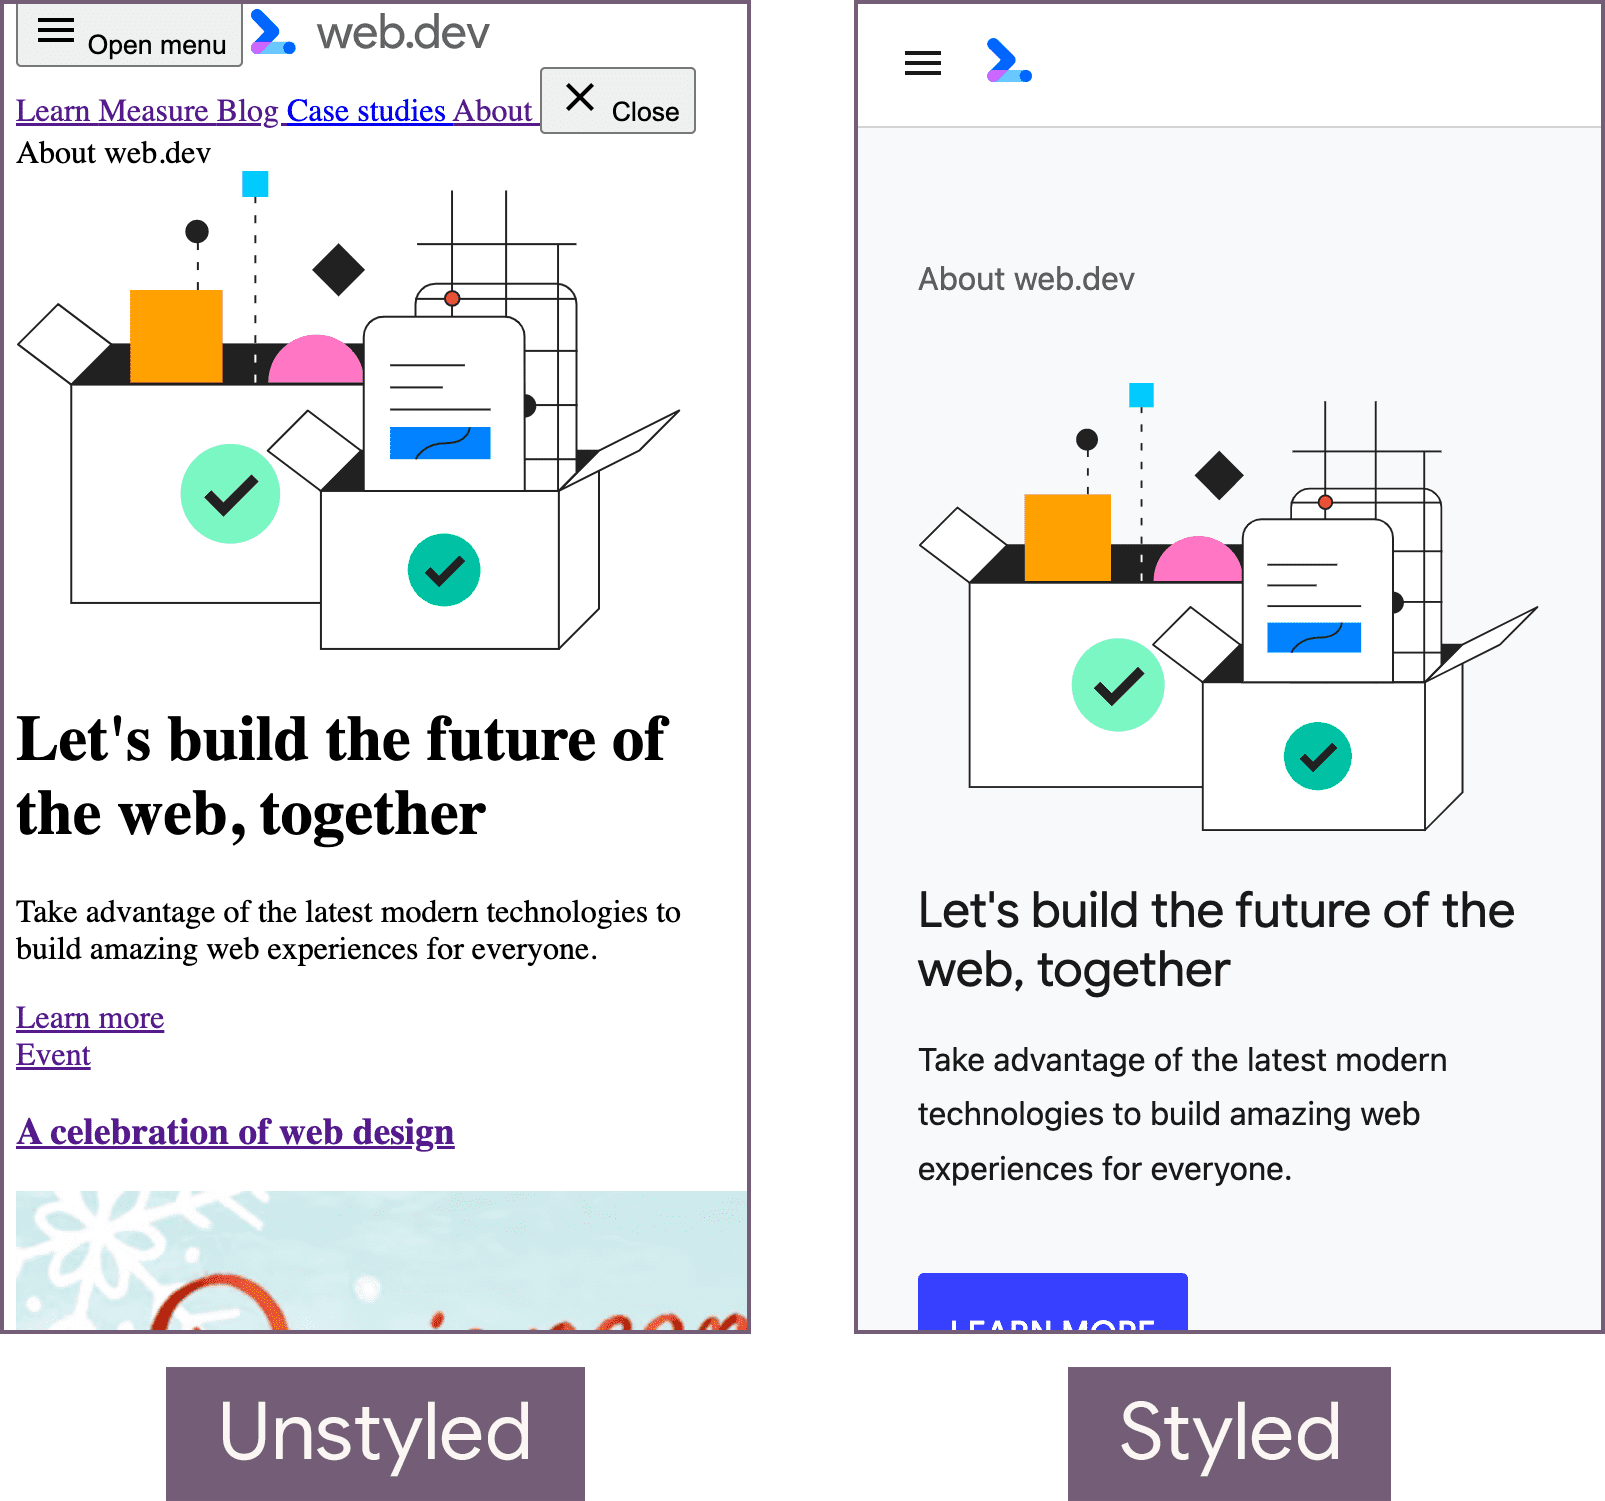 Strona główna web.dev w stanie bez stylu (po lewej) i ze stylem (po prawej).